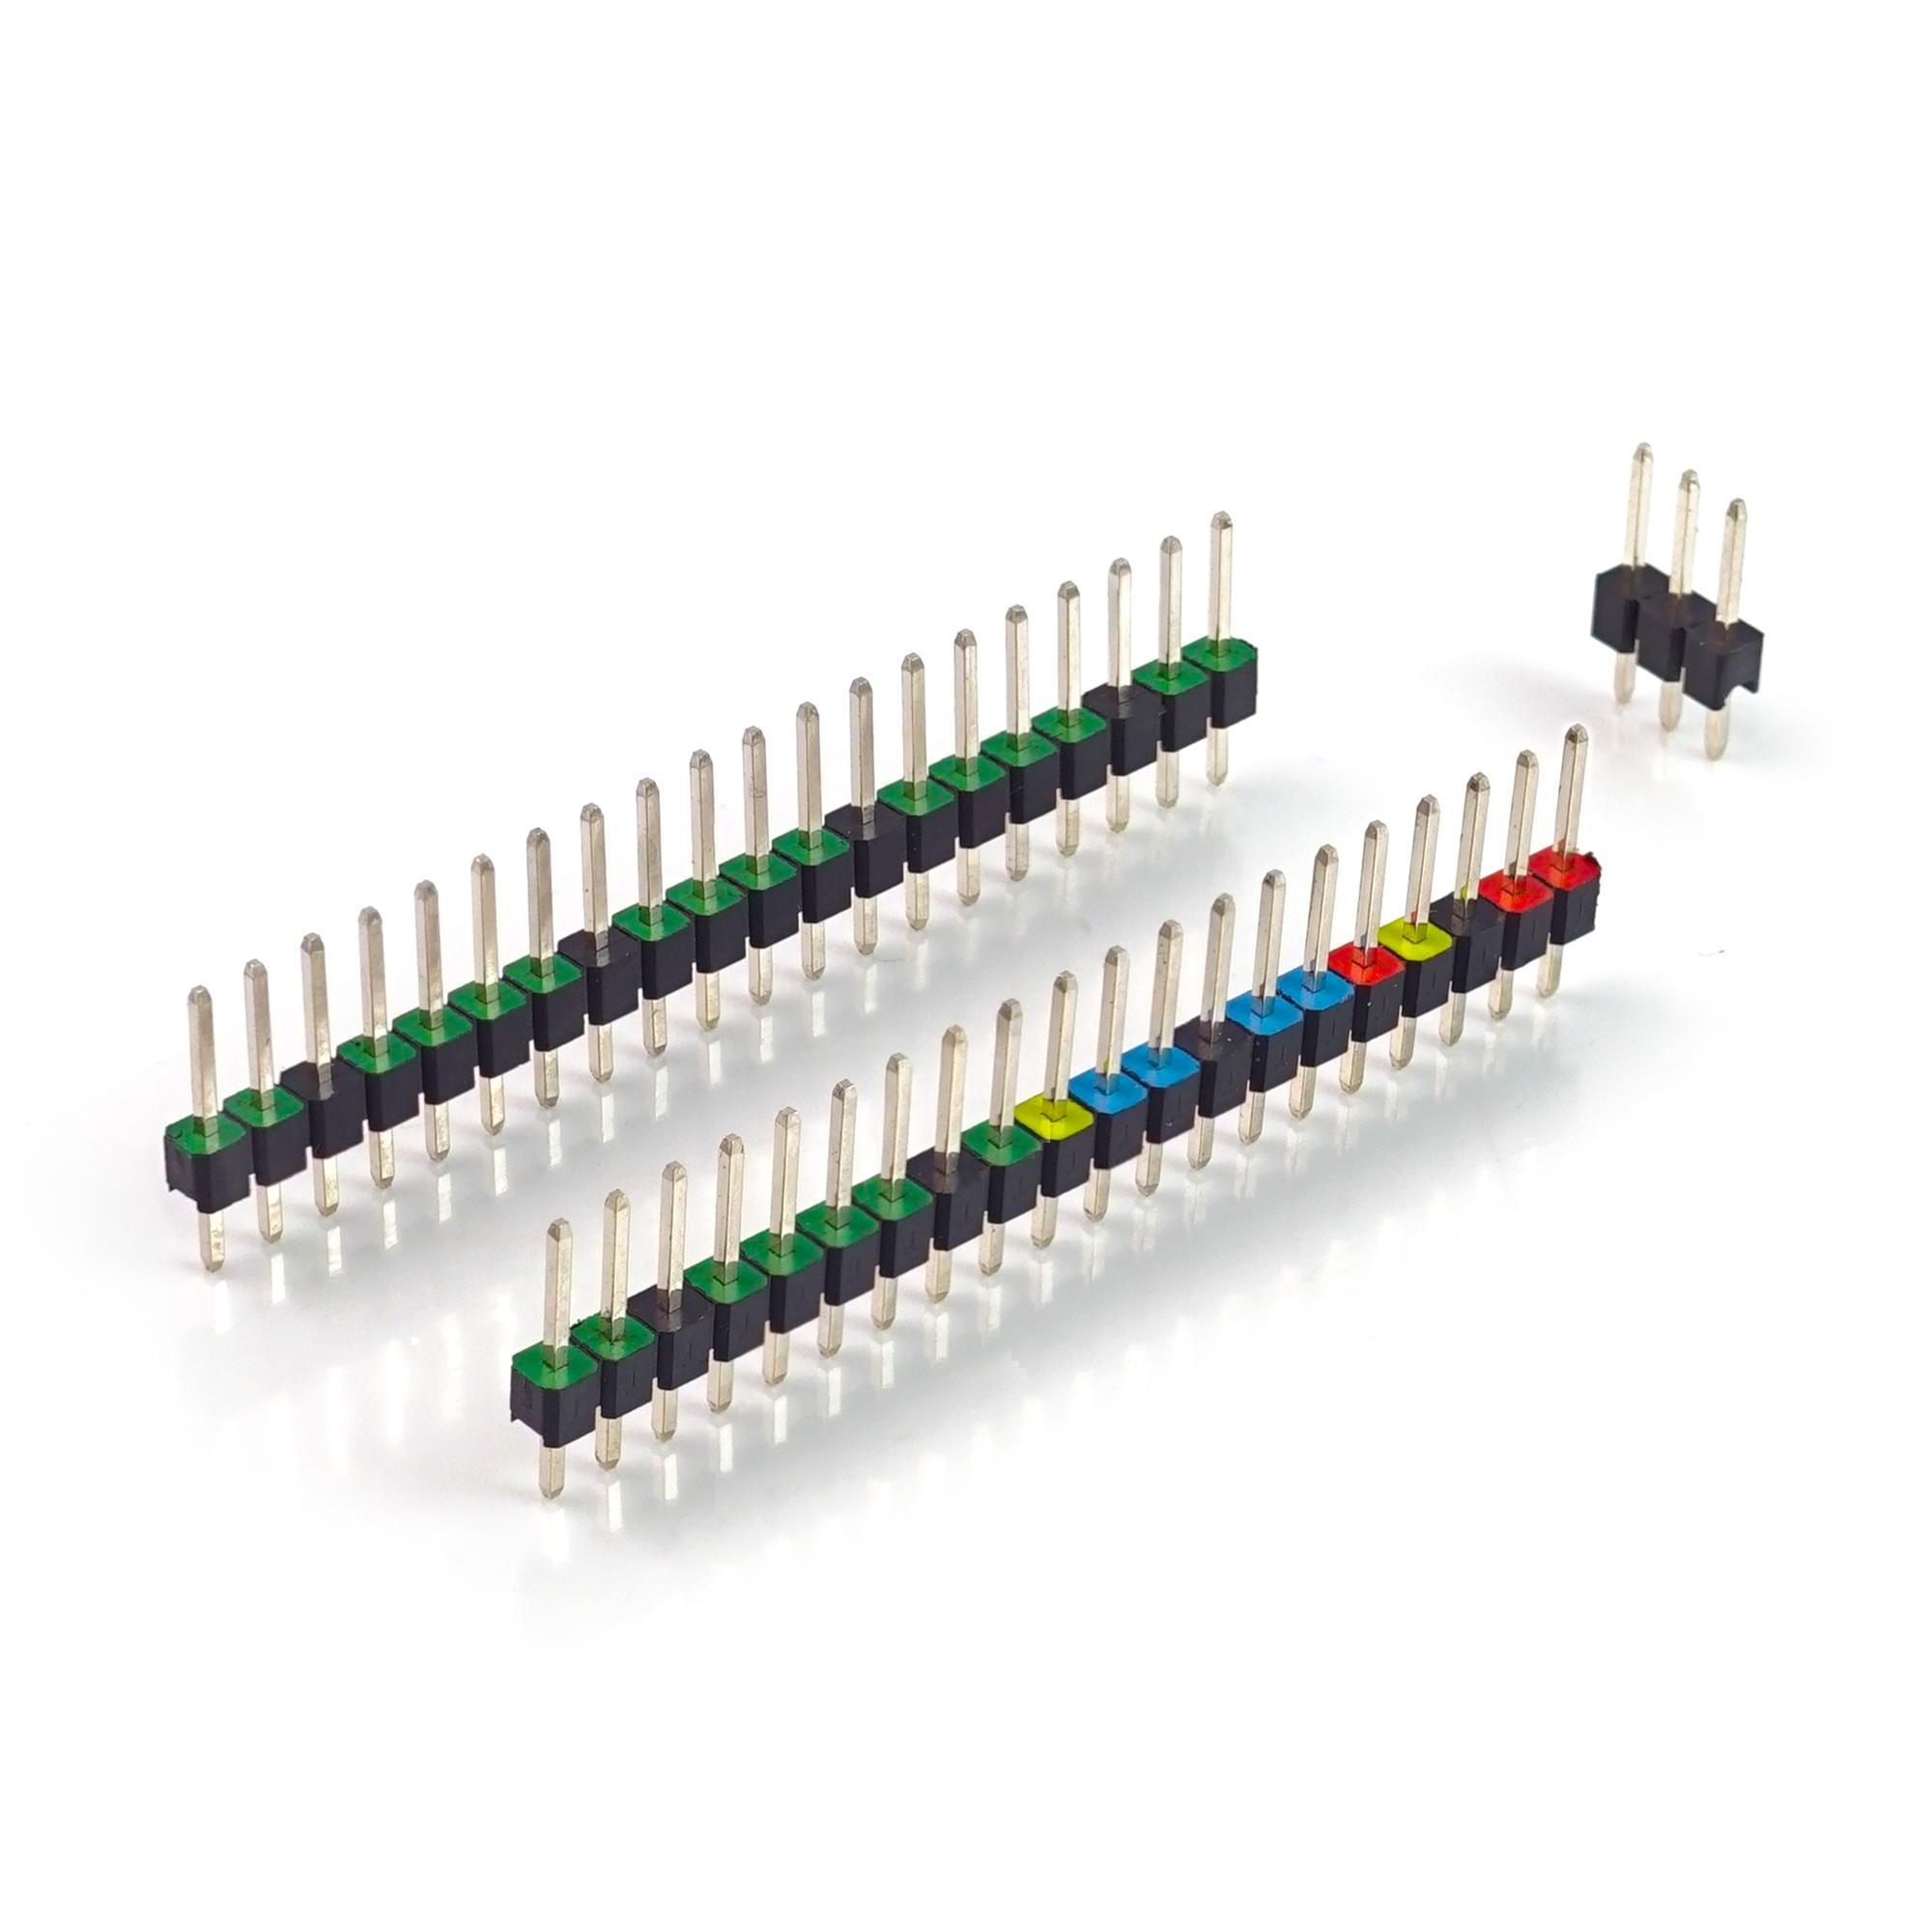 Stiftleisten / Pin Header Set für Raspberry Pi Pico, farbig kodiert, oben